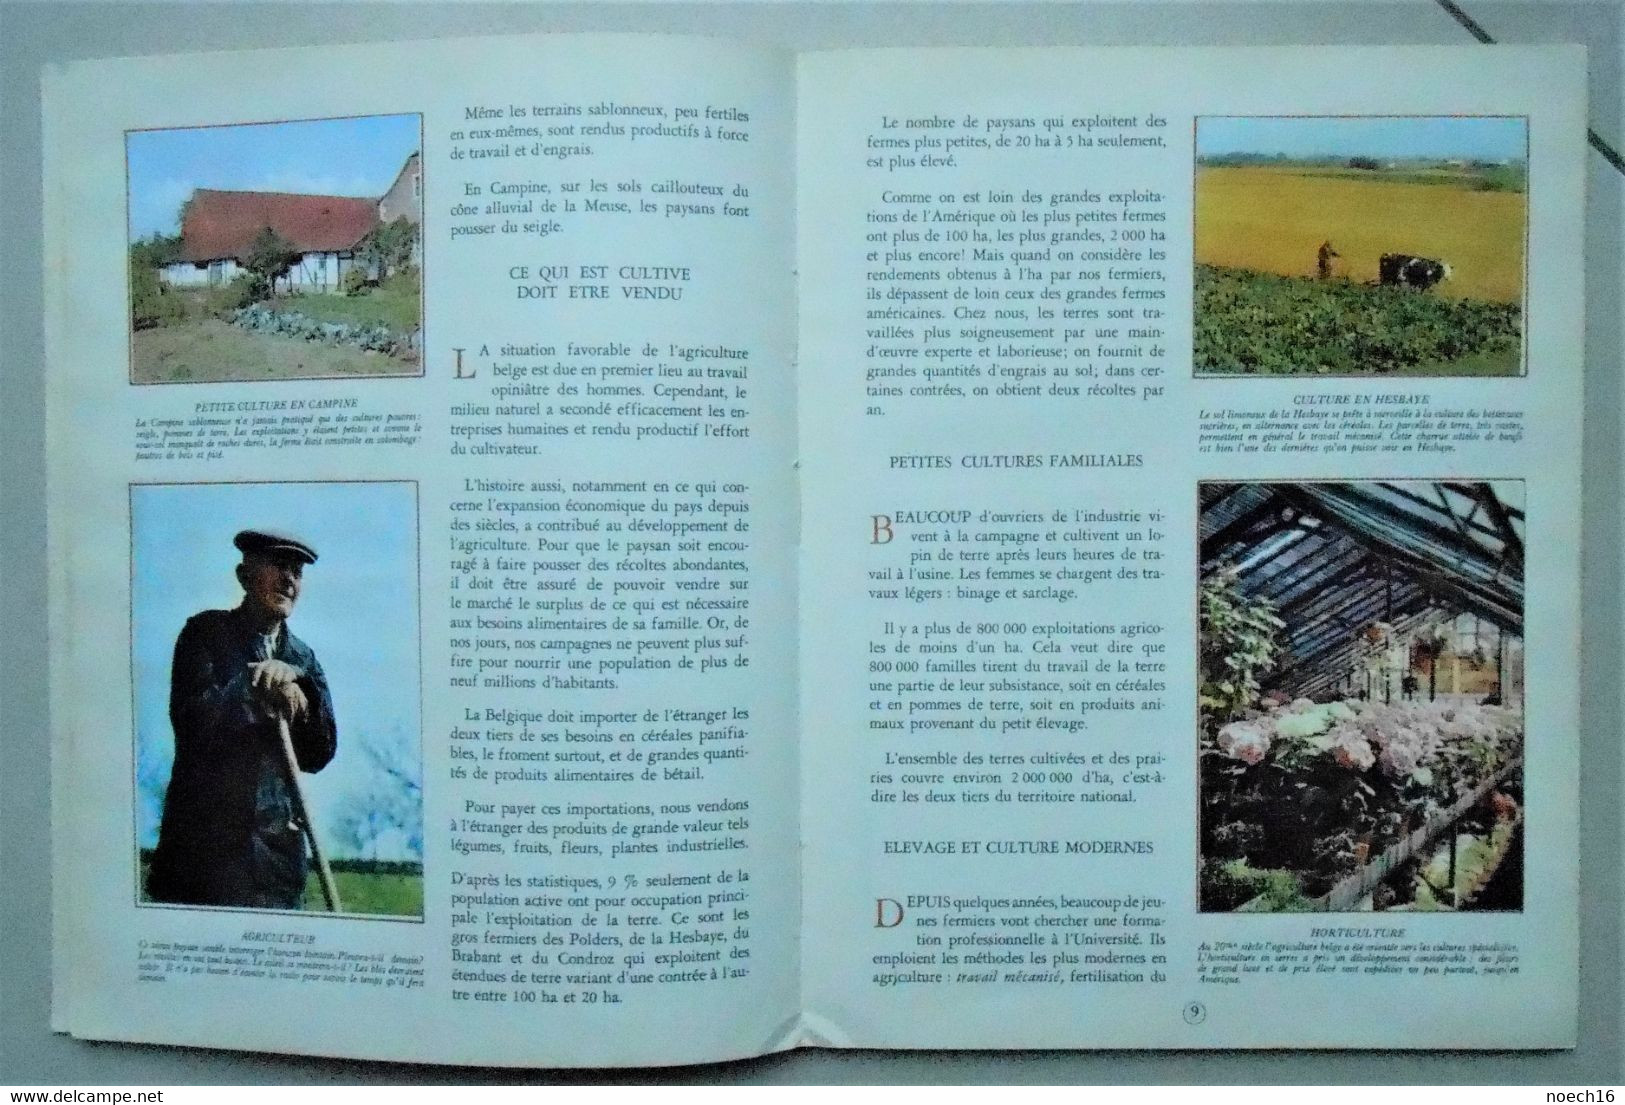 2 Albums chromos complets - La Géographie de la Belgique Tomes 1 & 2 - Timbre Tintin, Editions du Lombard